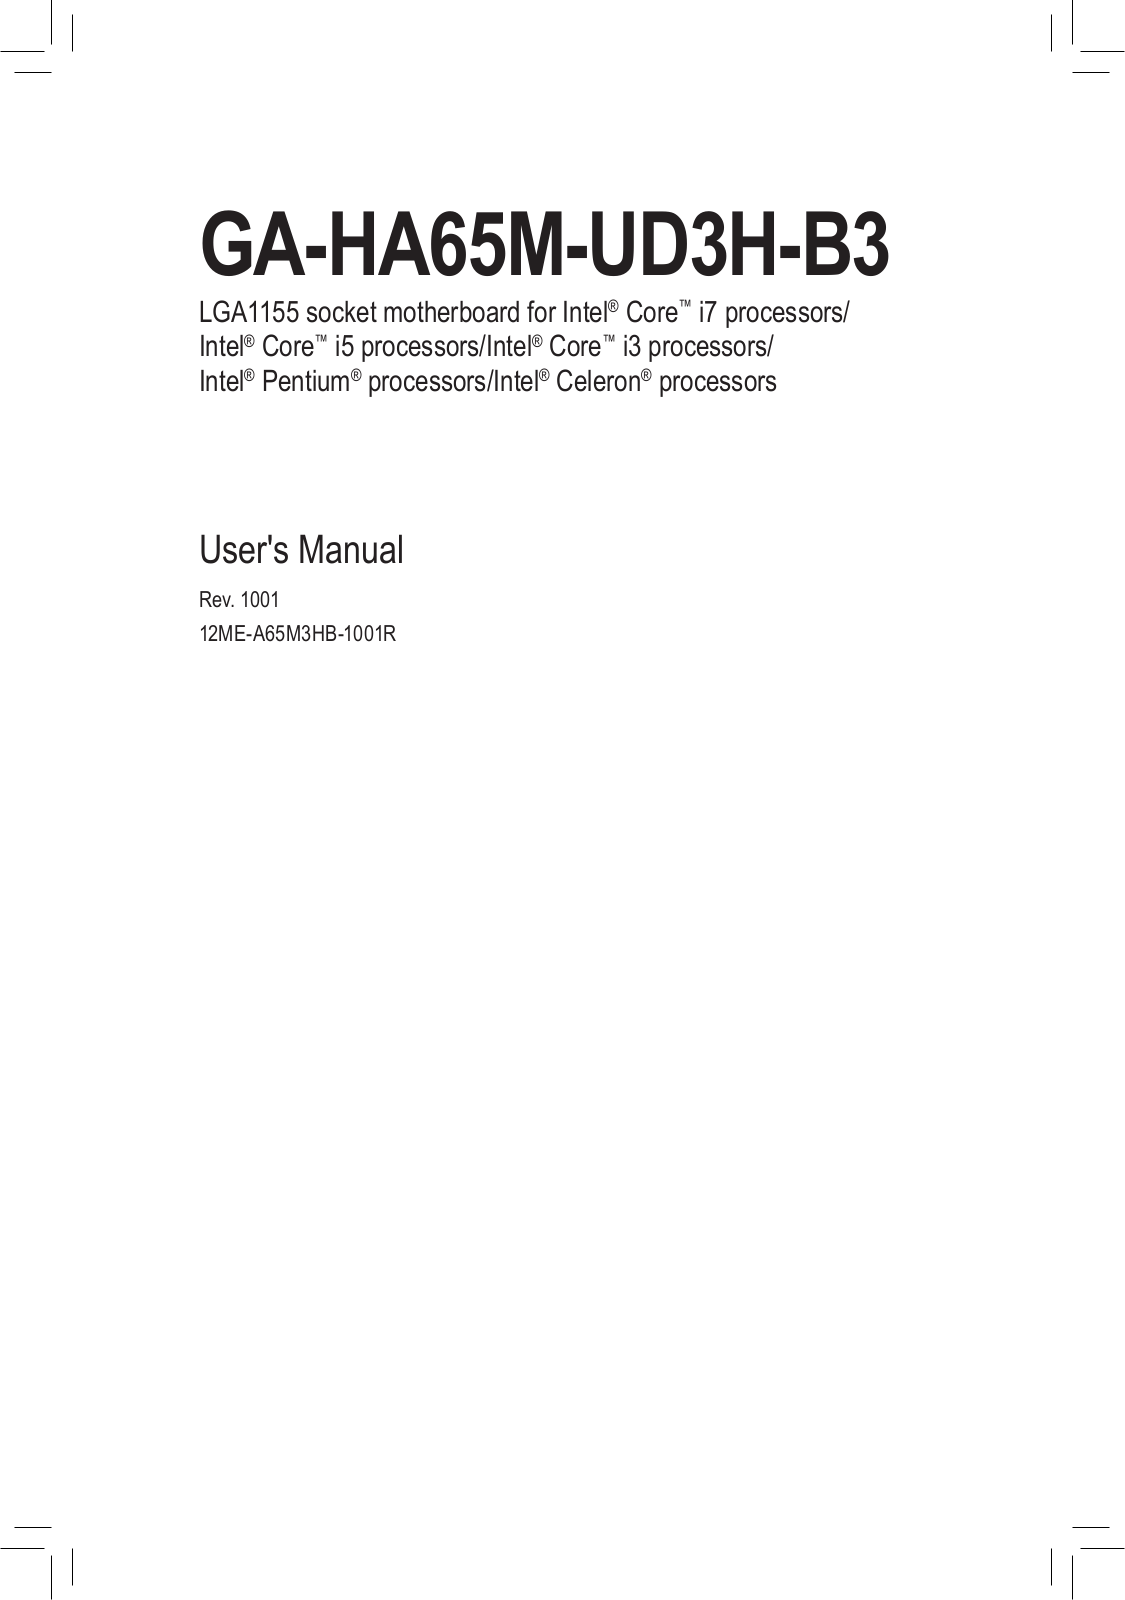 Gigabyte GA-HA65M-UD3H-B3 (rev. 1.0) User Manual